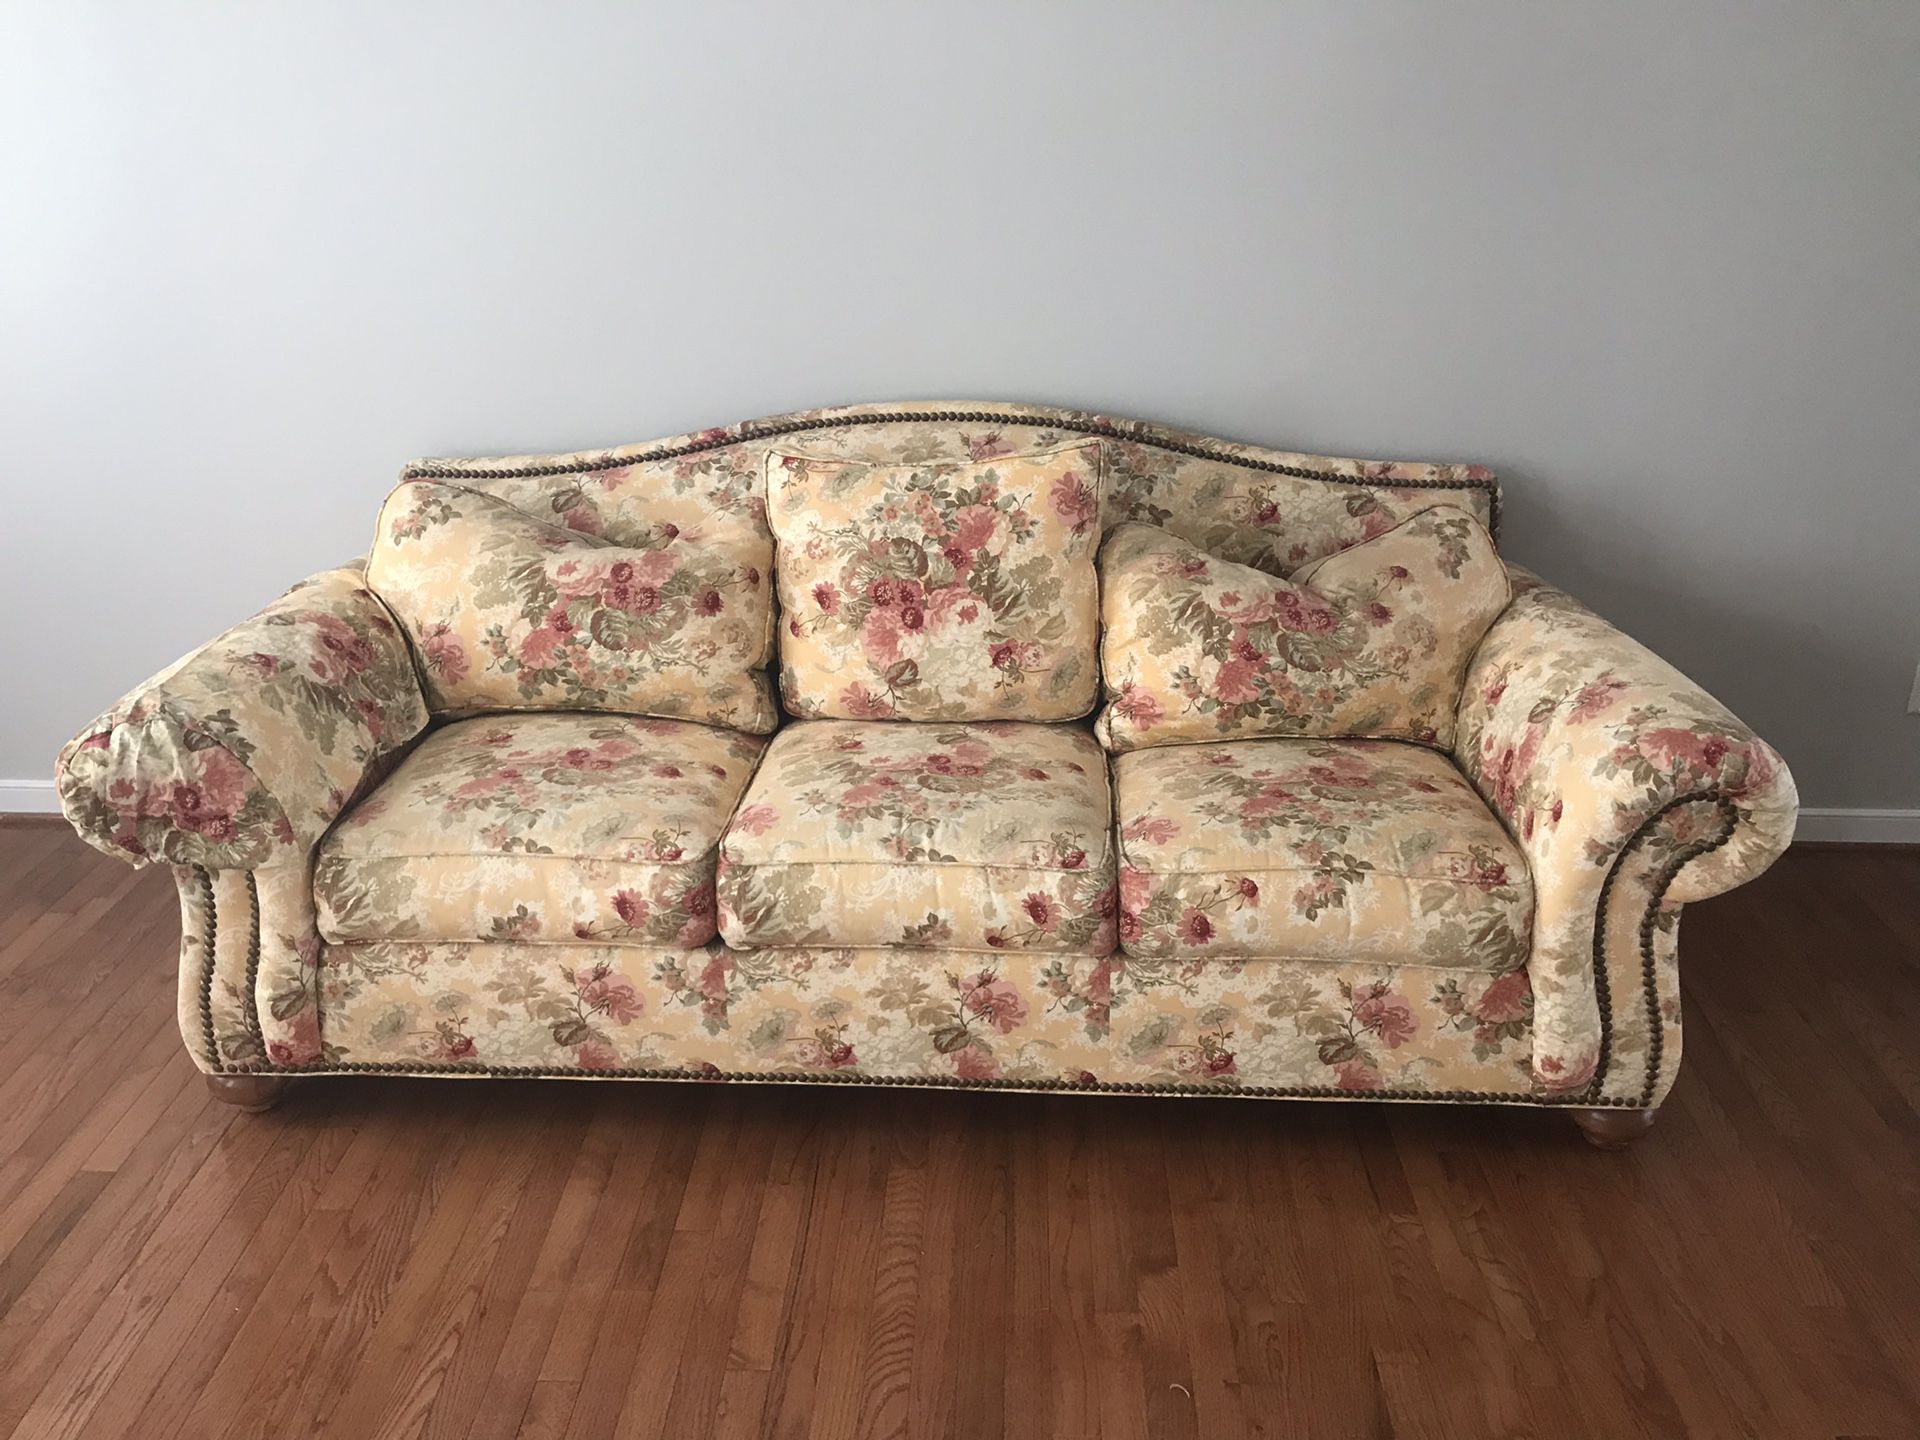 Ethen Allen floral couch